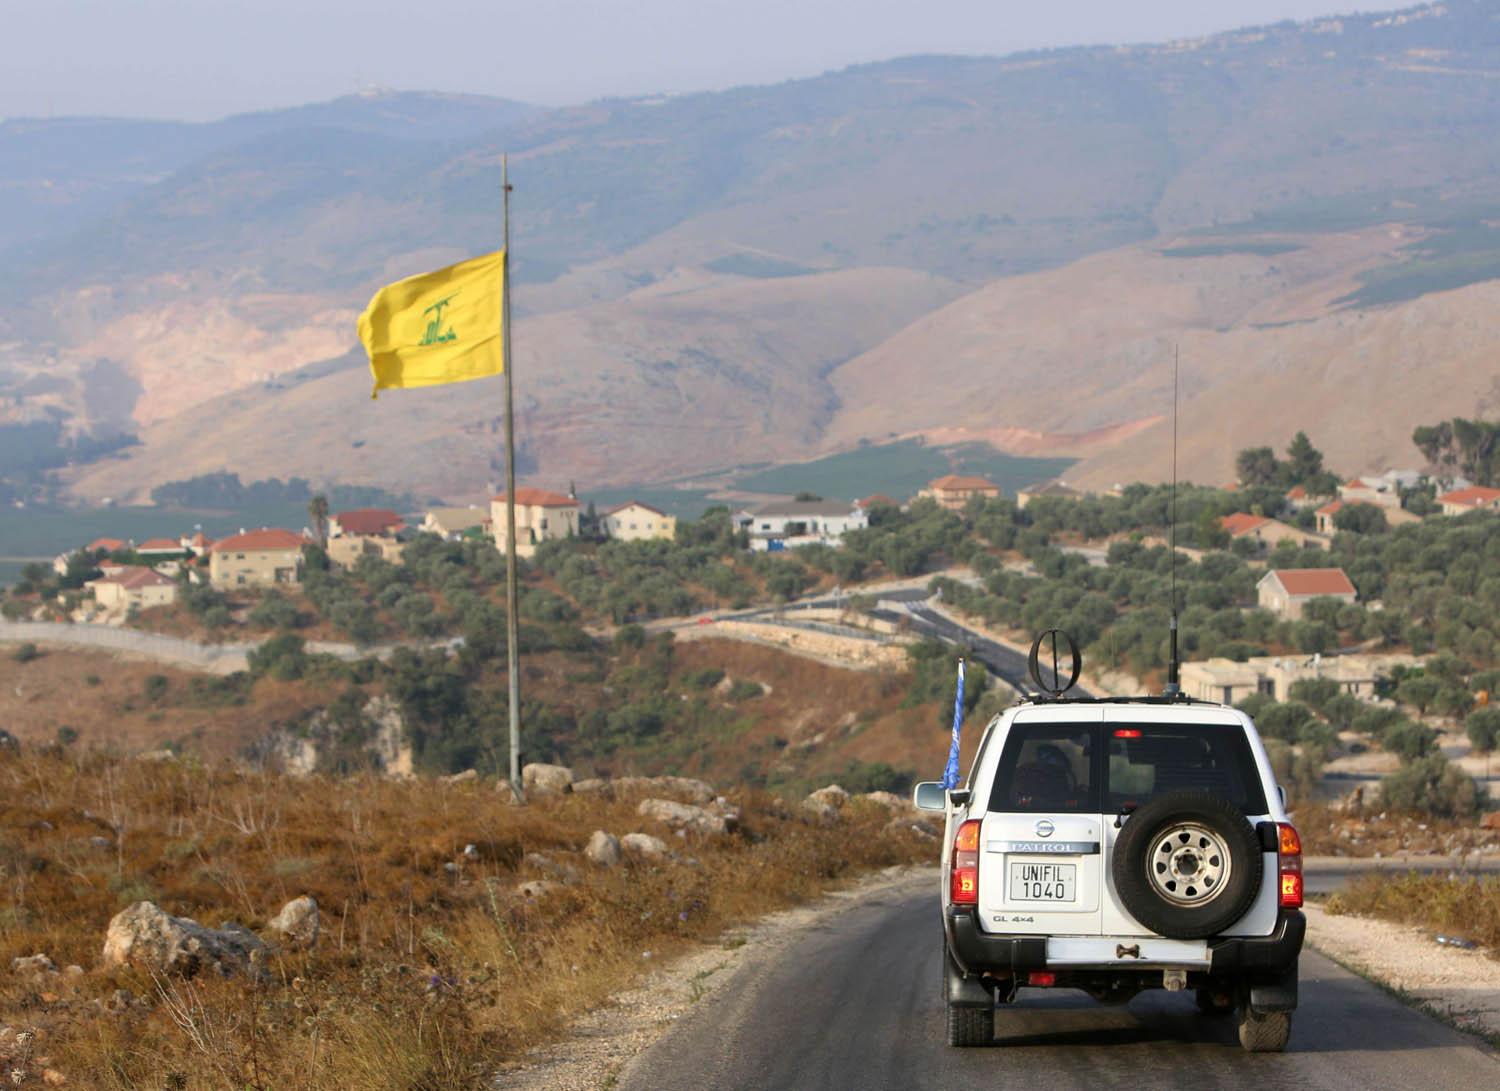 دورية للأمم المتحدة في المنطقة منزوعة السلاح جنوب لبنان